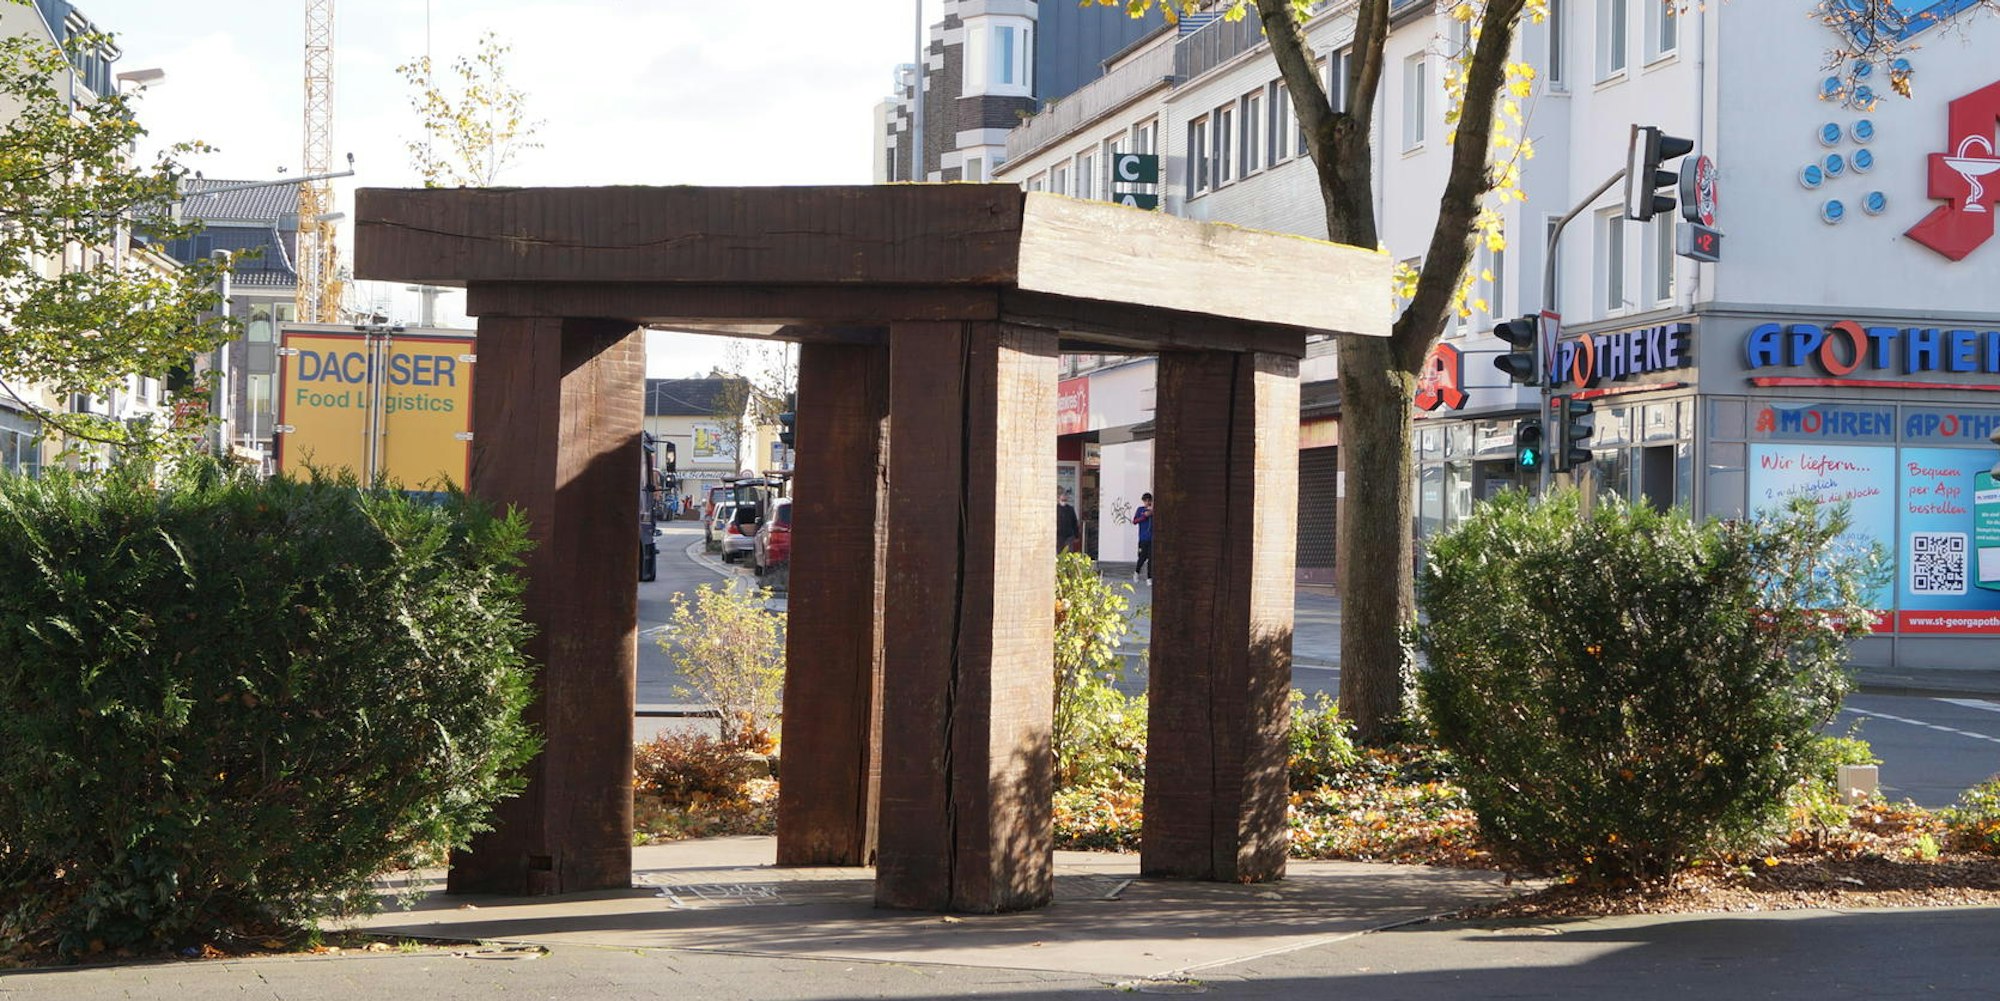 Aus Sicherheitsgründen soll die Skulptur Kölner Tor noch in diesem Jahr eingelagert und am ursprünglichen Standort des Tores in der Innenstadt wieder aufgebaut werden.